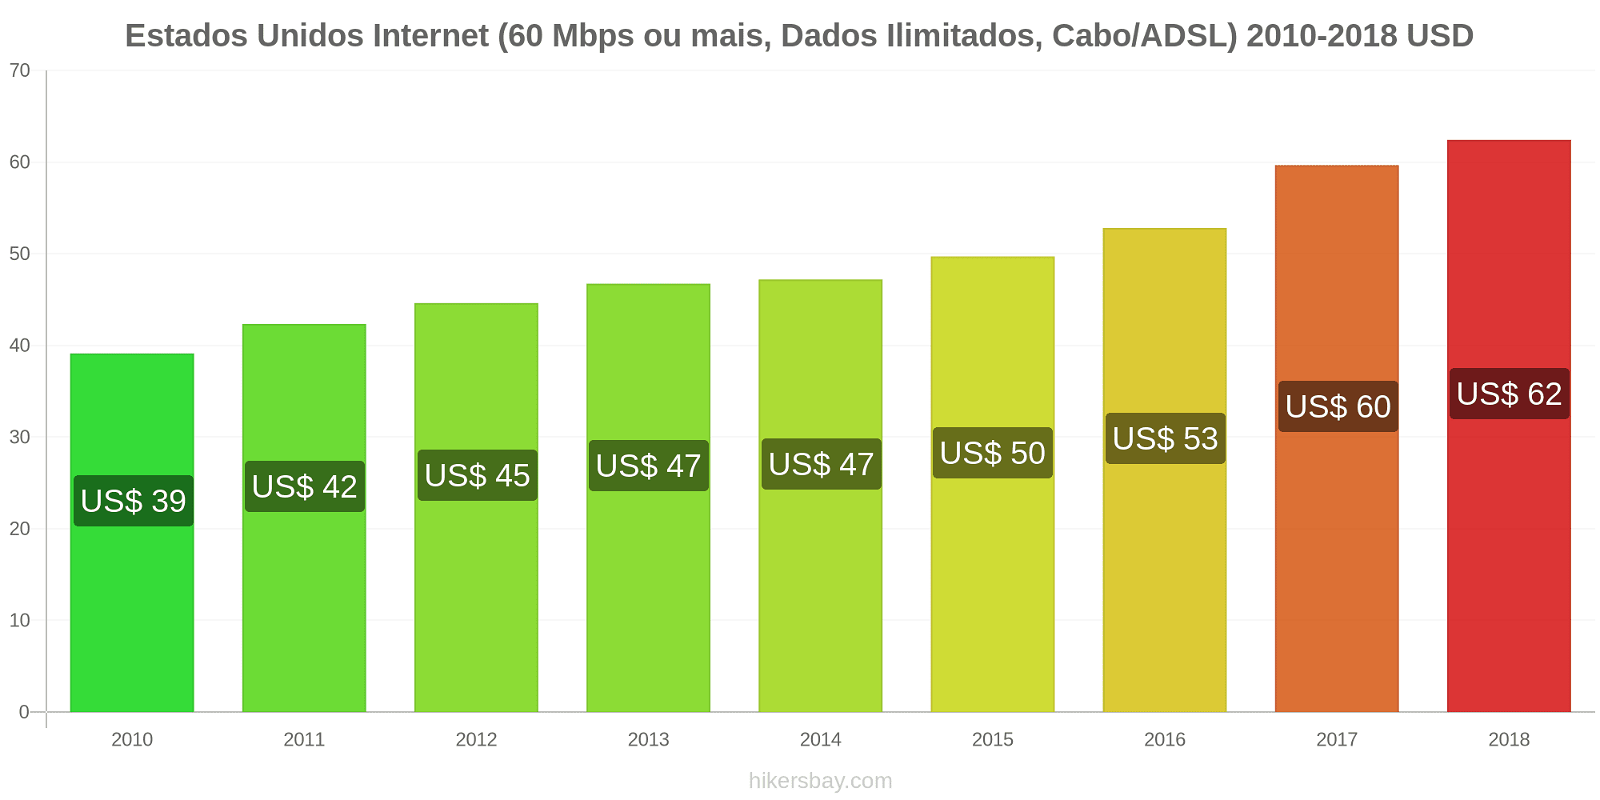 Estados Unidos mudanças de preços Internet (60 Mbps ou mais, dados ilimitados, cabo/ADSL) hikersbay.com